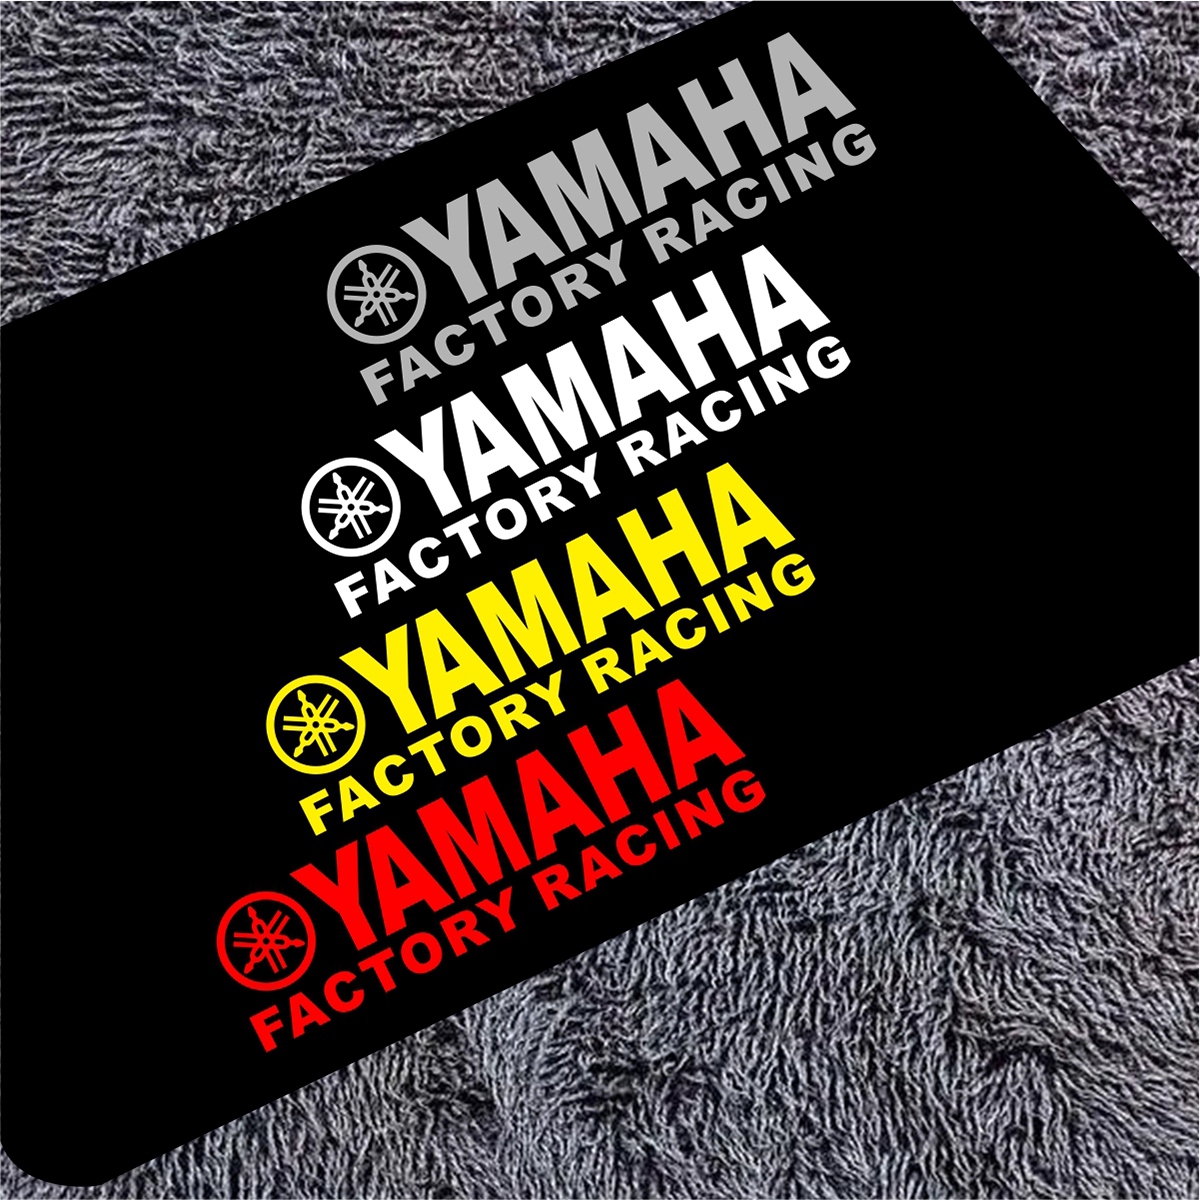 Yamaha Cafe Racer: Yamaha Cafe Racer là một chiếc xe mang phong cách đầy mạnh mẽ và cá tính hoàn toàn mới. Với thiết kế đẹp mắt và tính năng tiên tiến, chiếc xe mang đến cho người lái trải nghiệm lái xe đầy hứng khởi và đam mê. Việc sở hữu một chiếc Yamaha Cafe Racer chắc chắn sẽ khiến bạn cảm thấy vô cùng phấn khích.